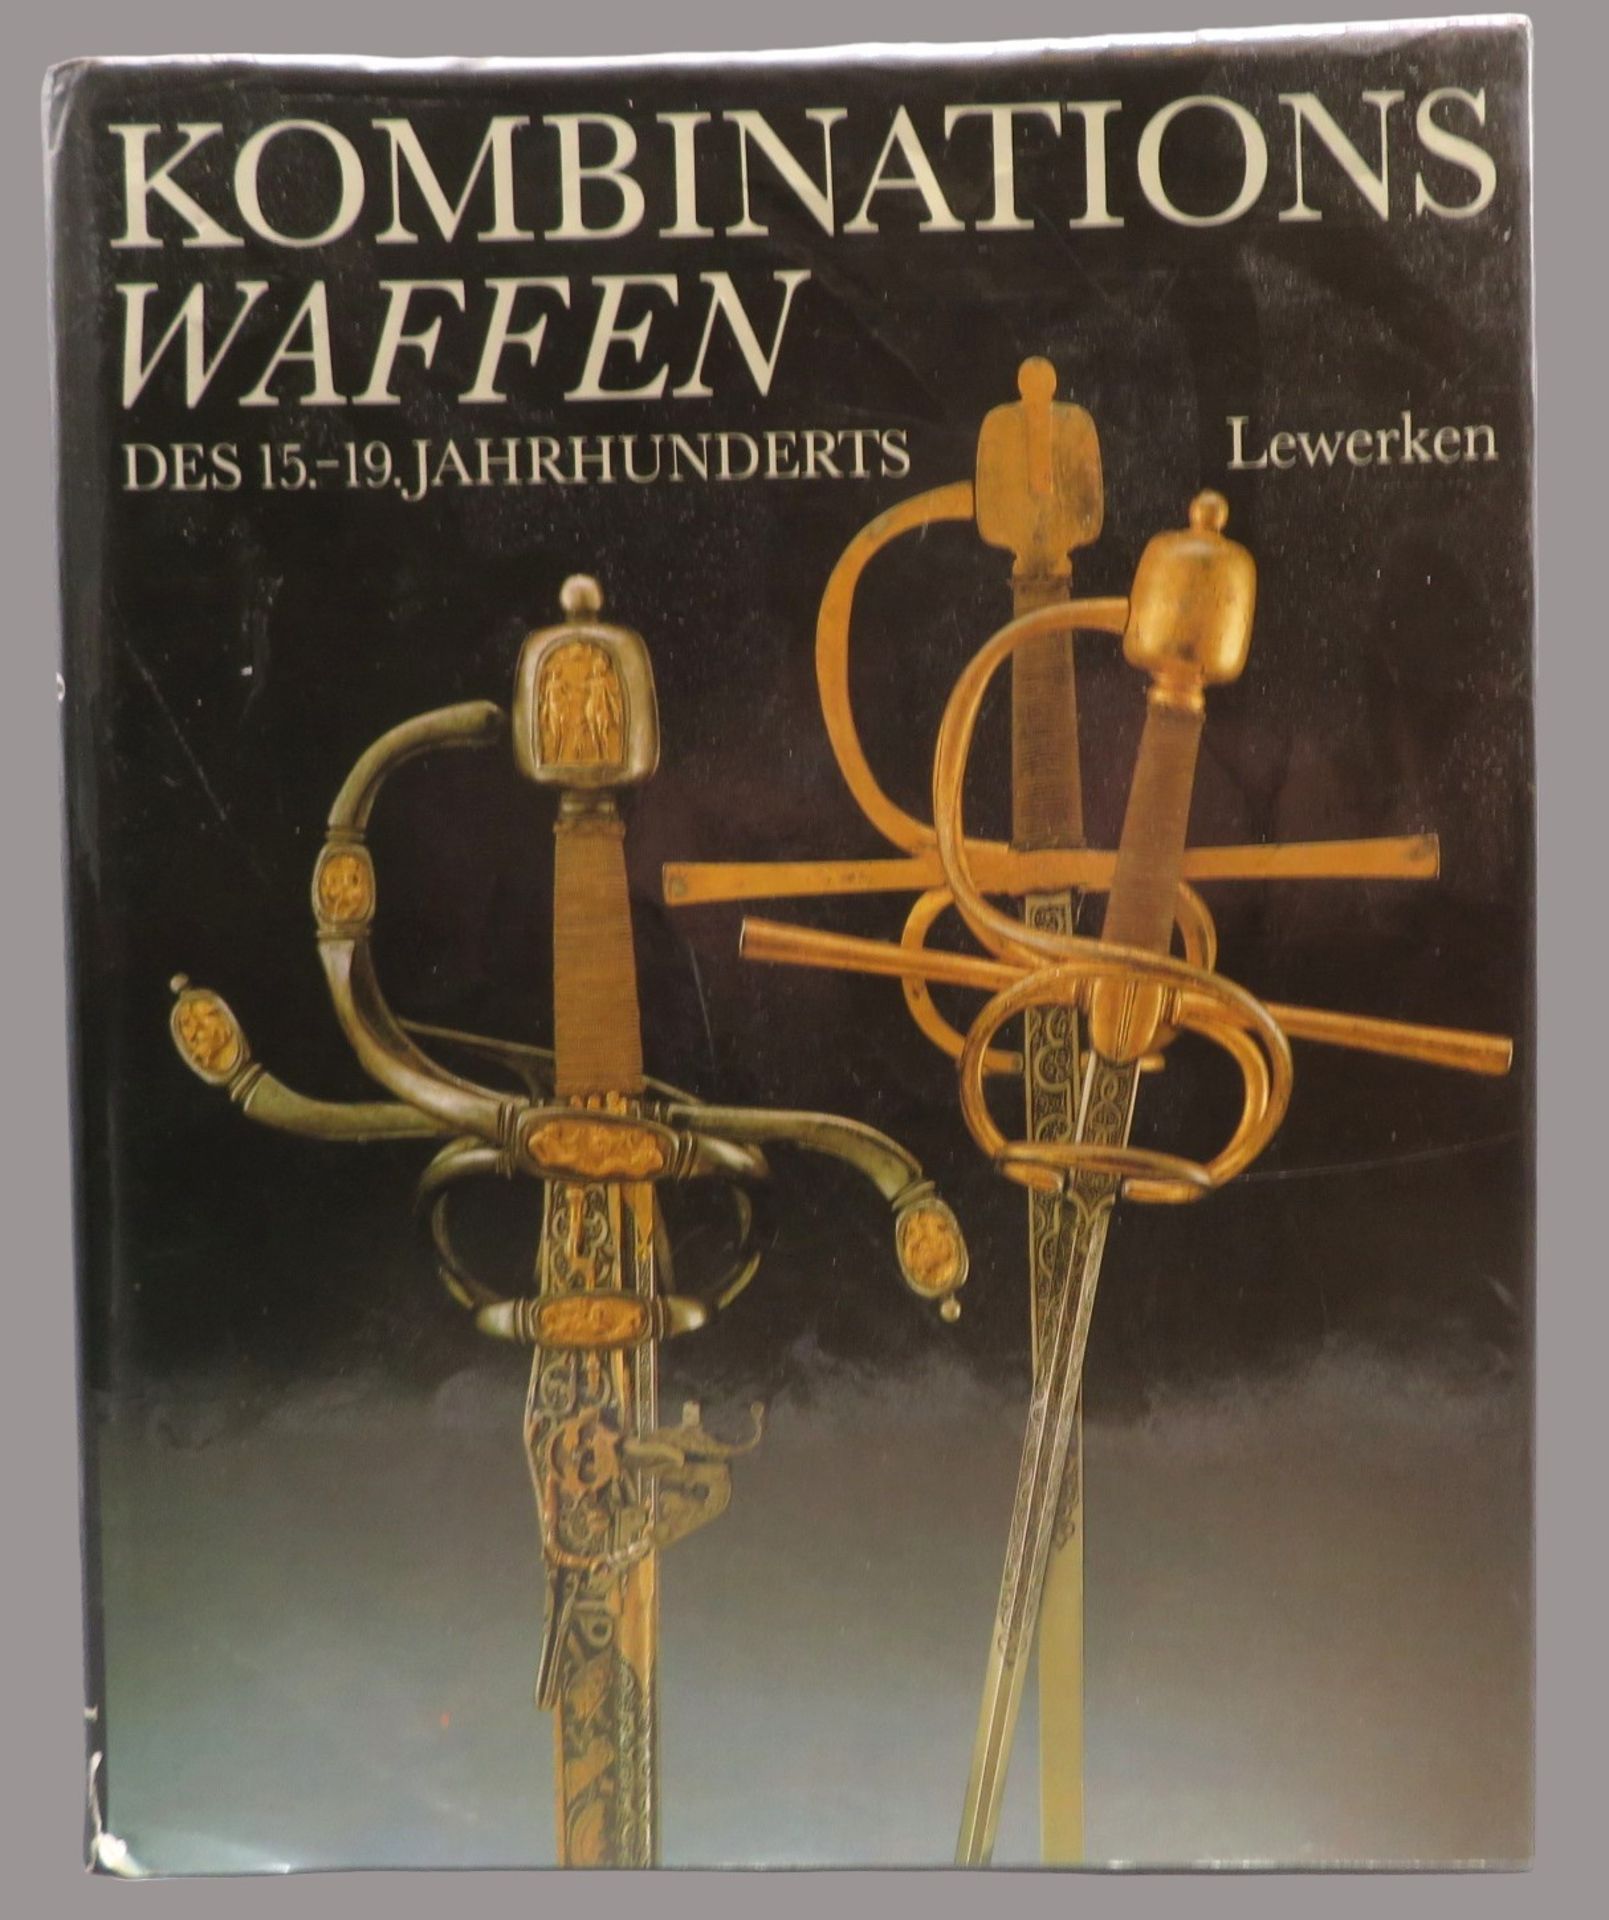 Lewerken, Heinz-Werner: Kombinationswaffen des 15. - 19. Jahrhunderts. Militärverlag der Deutschen